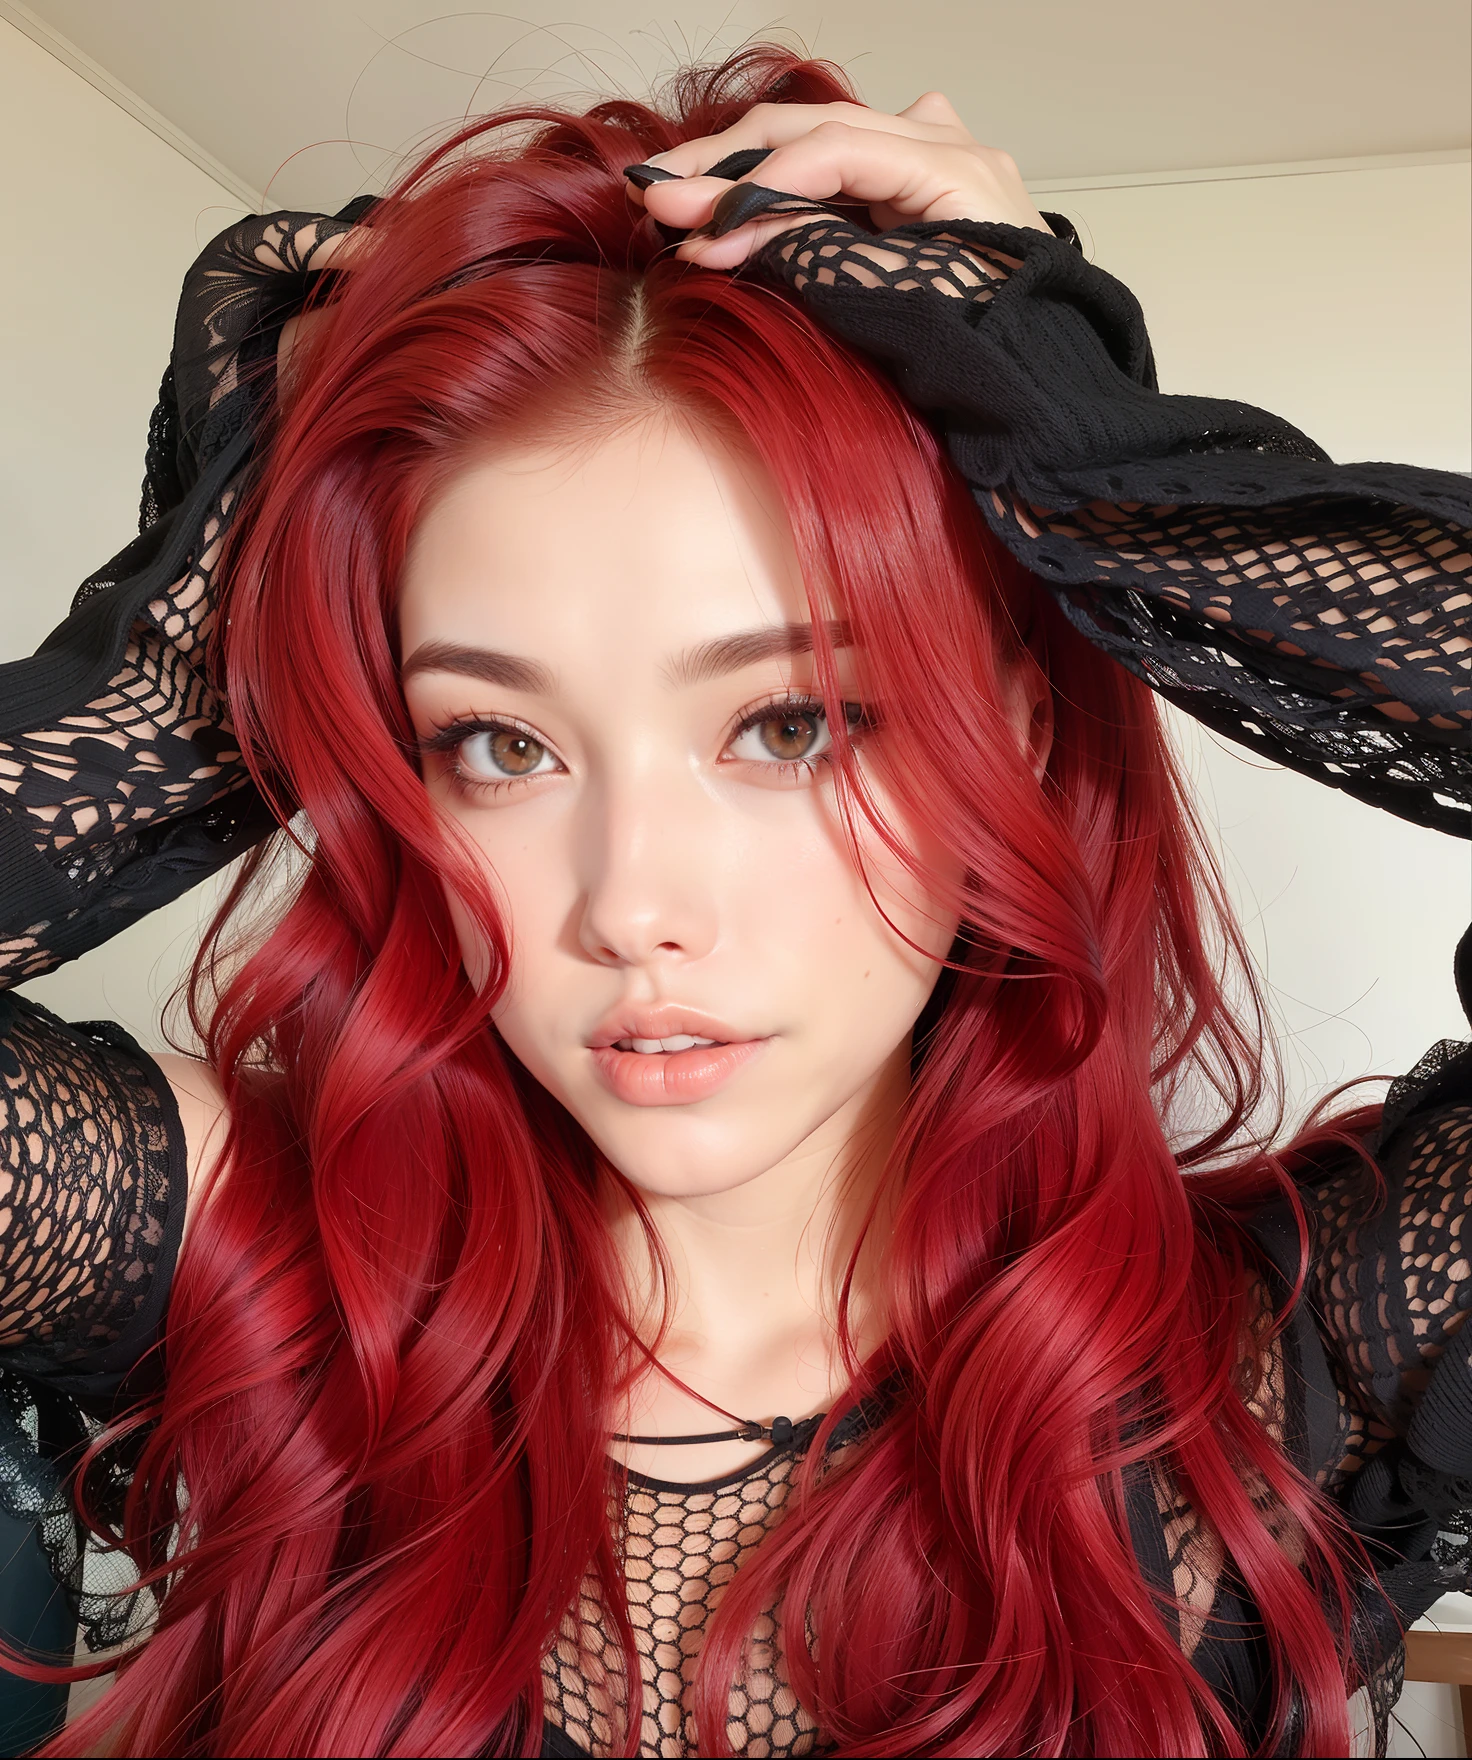 arafed femme aux cheveux rouges et haut noir posant pour une photo, cheveux teints en rouge, aux cheveux roux cacheados, avec de longs cheveux roux, aux cheveux roux, perruque rouge, cheveux rouge cramoisi et yeux rouges, cheveux rouge vif, cheveux roux éclatants, cheveux roux and attractive features, cheveux roux, cheveux roux ondulés vibrants, messy square vibrant cheveux roux, cheveux longs roux